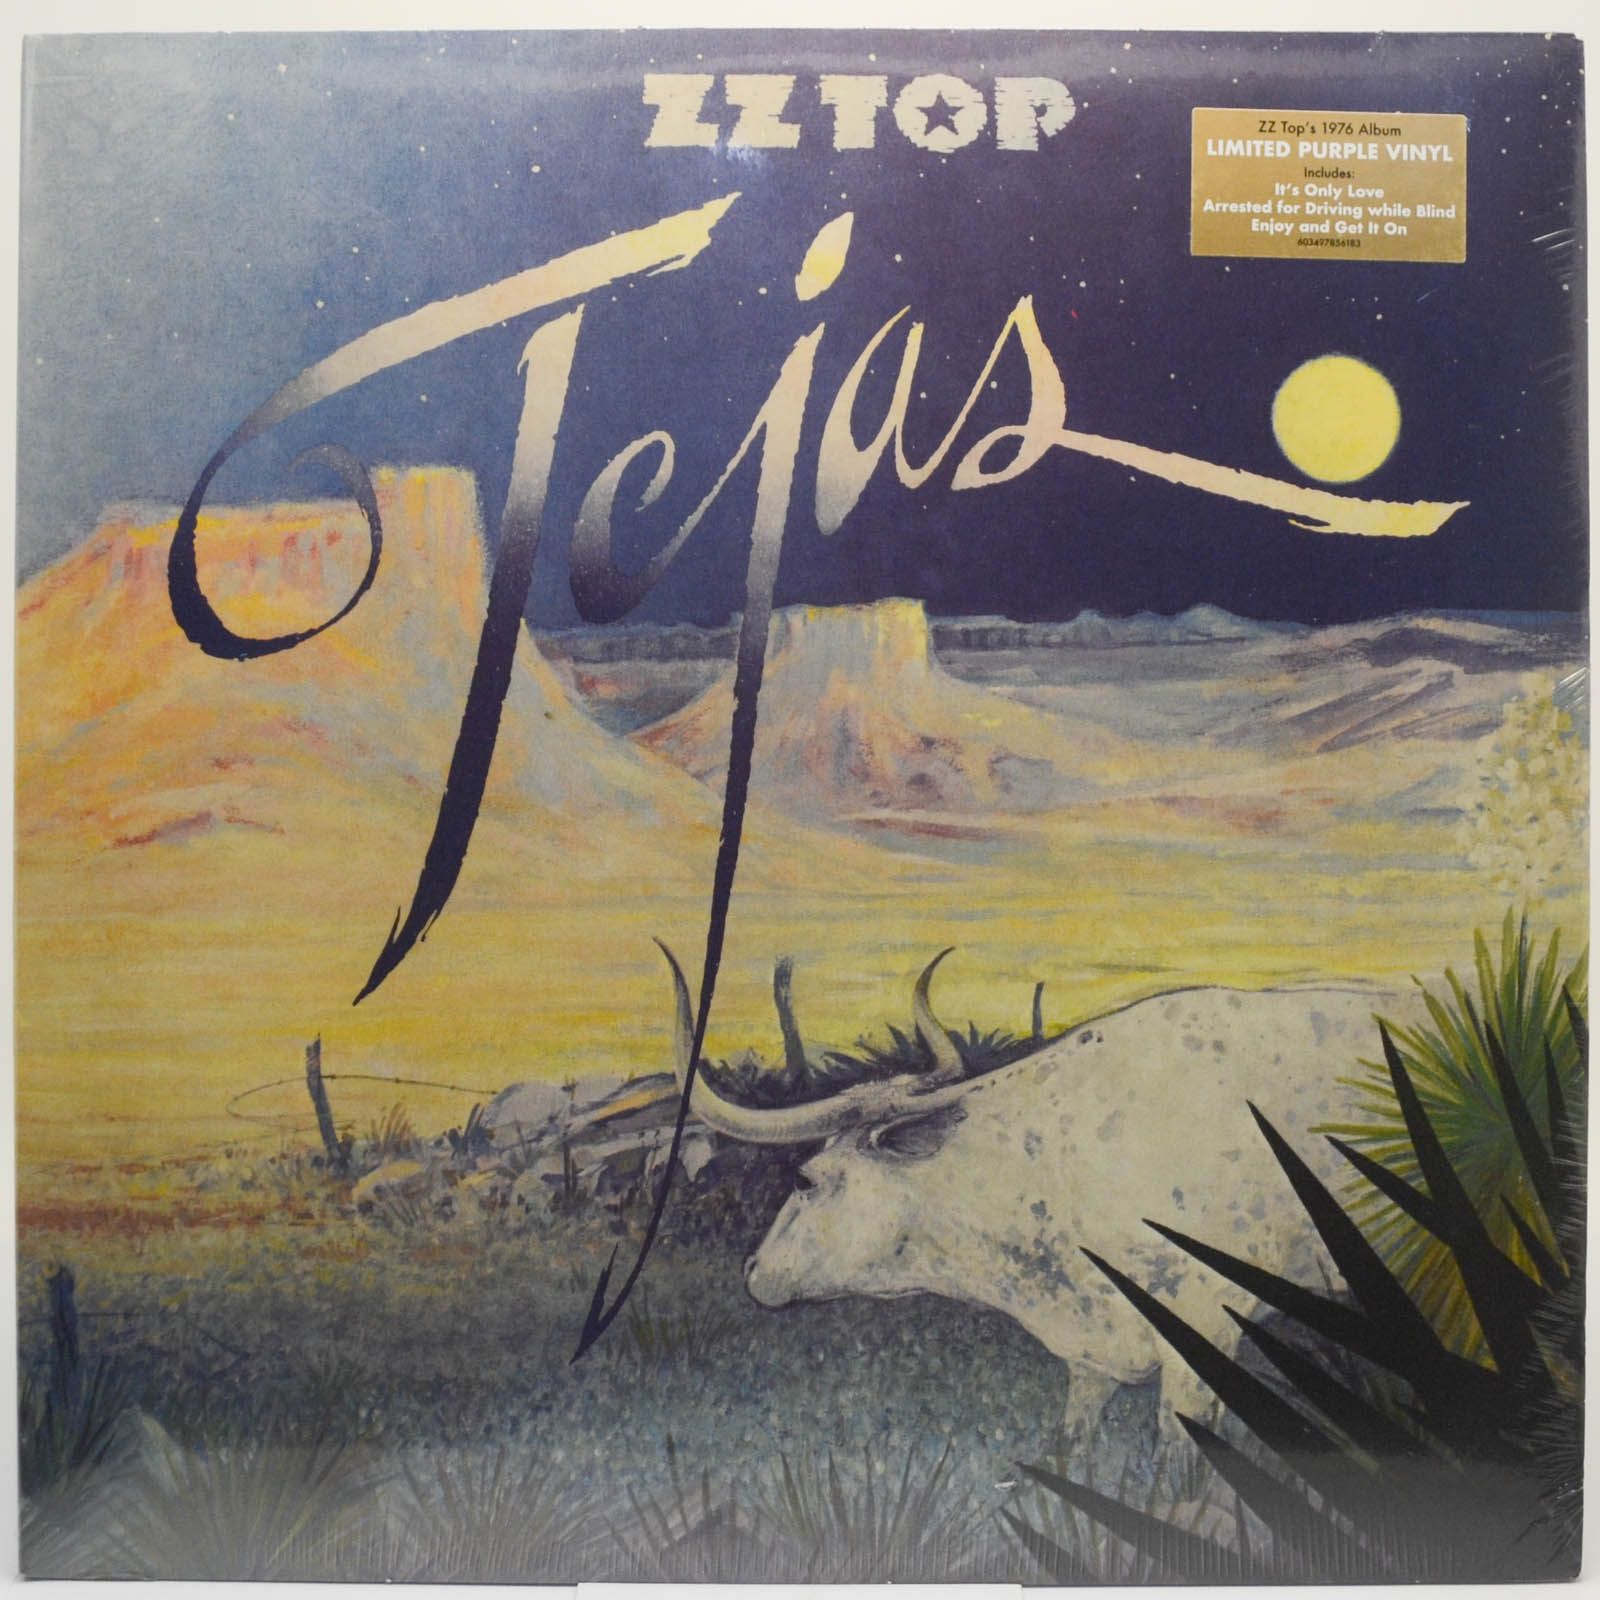 ZZ Top — Tejas, 1976